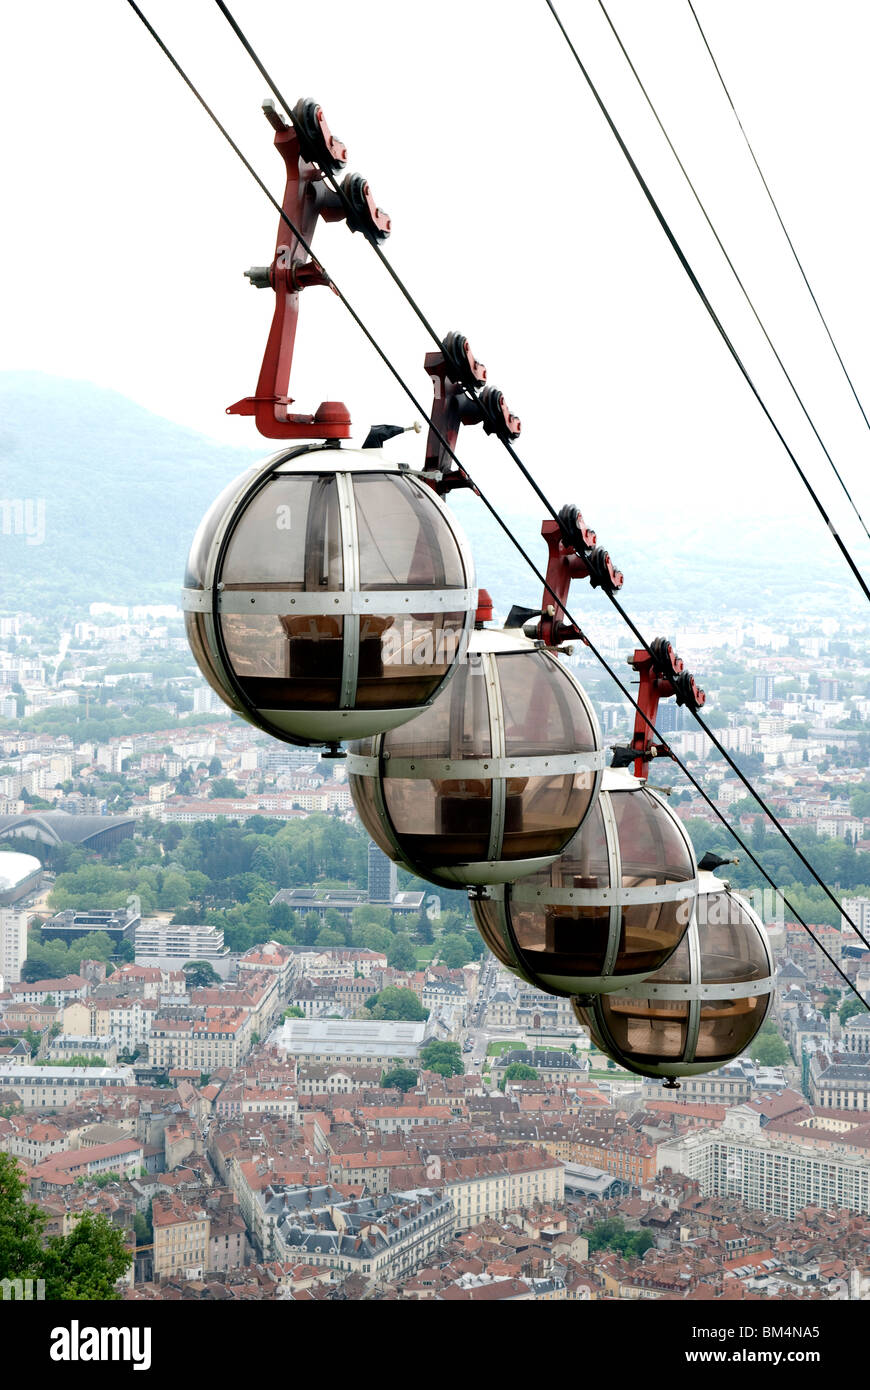 téléphérique cable car in Grenoble France Stock Photo - Alamy